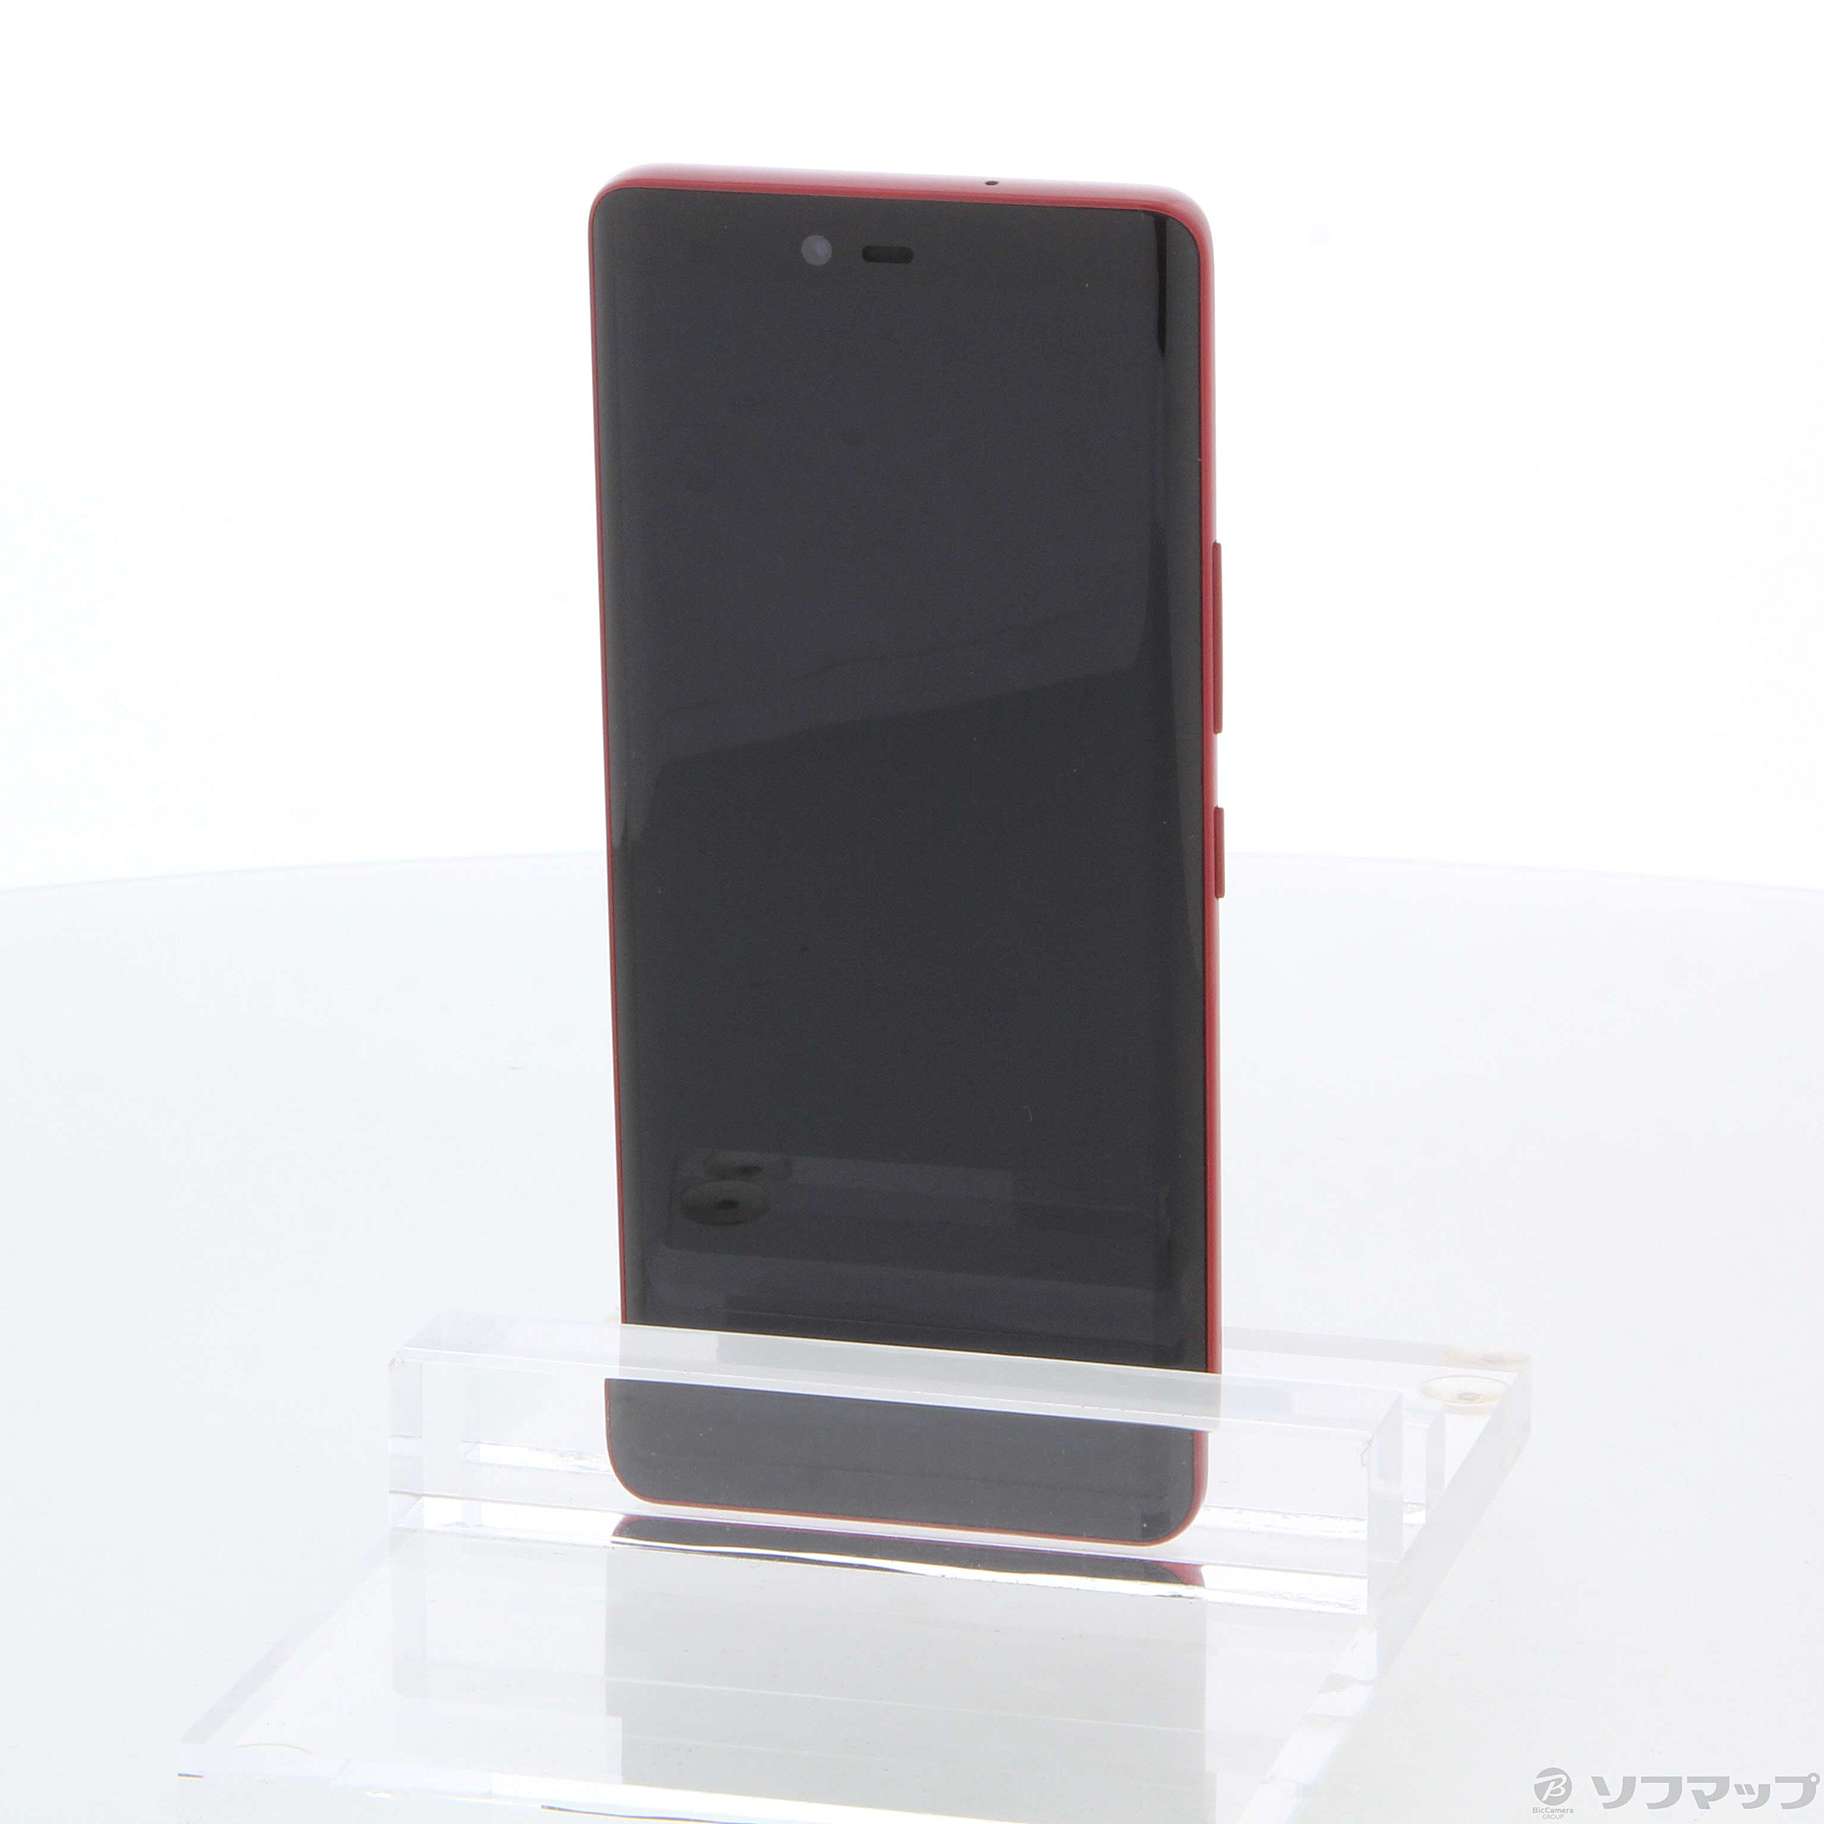 Rakuten Hand 5G クリムゾンレッド 128GB - 携帯電話本体